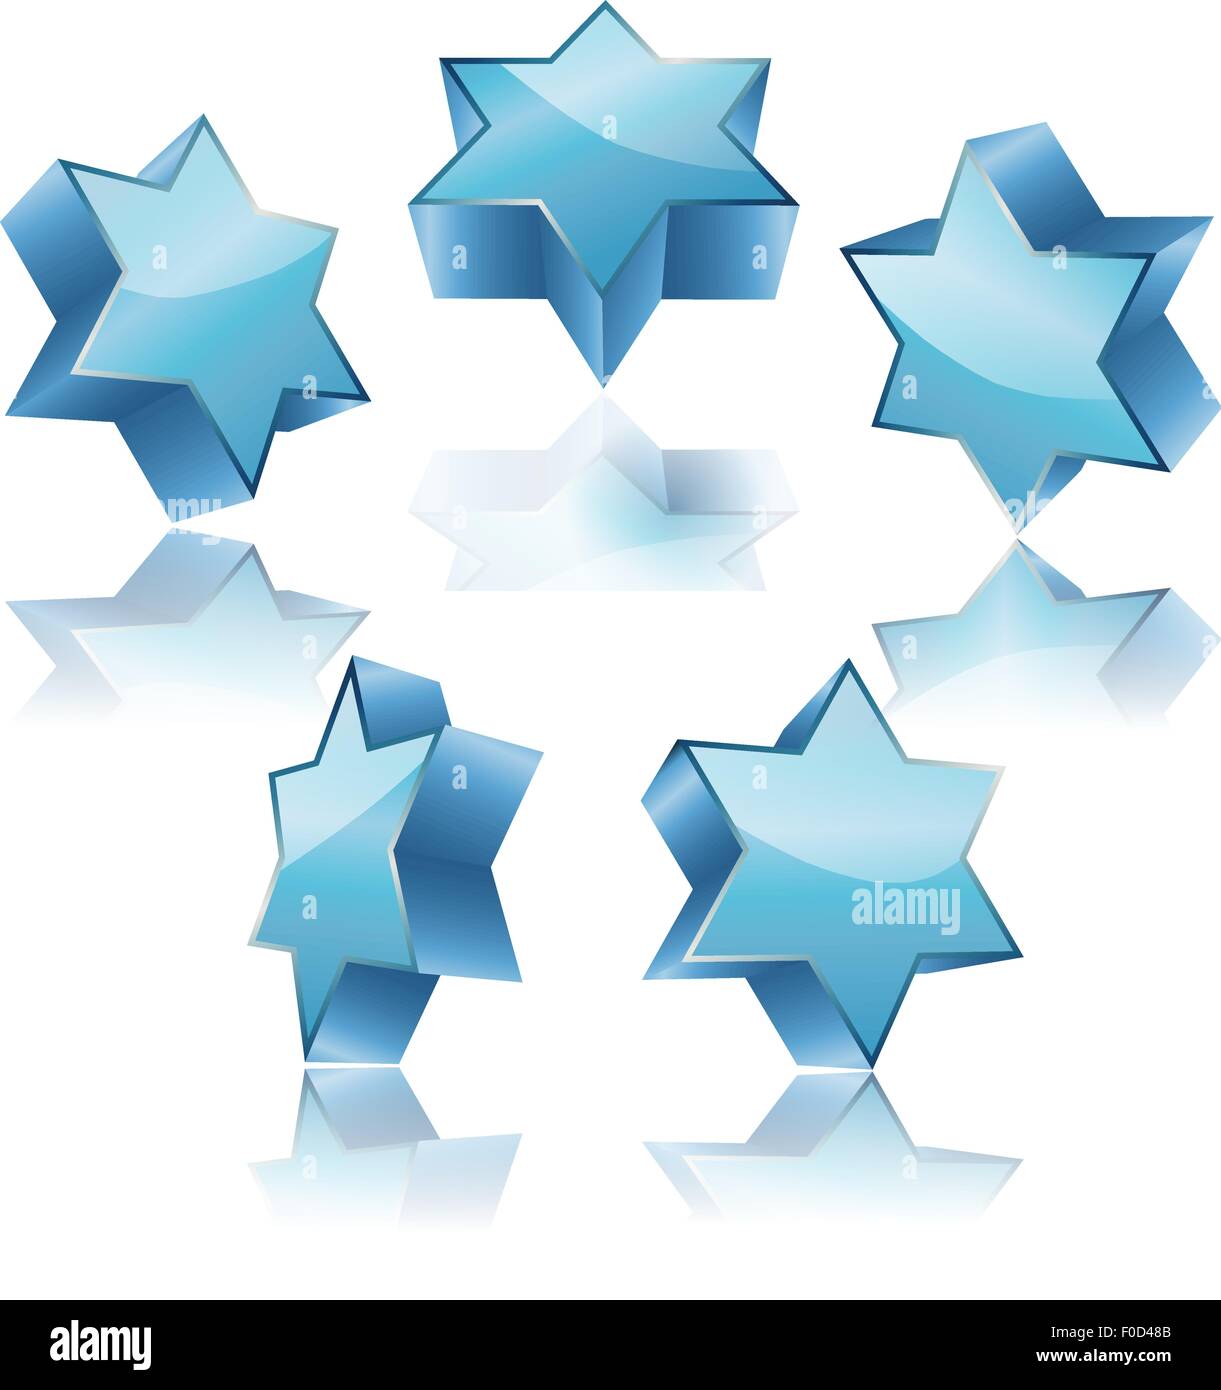 Metallic blue 3d étoile de David avec jeu de réflexion Illustration de Vecteur